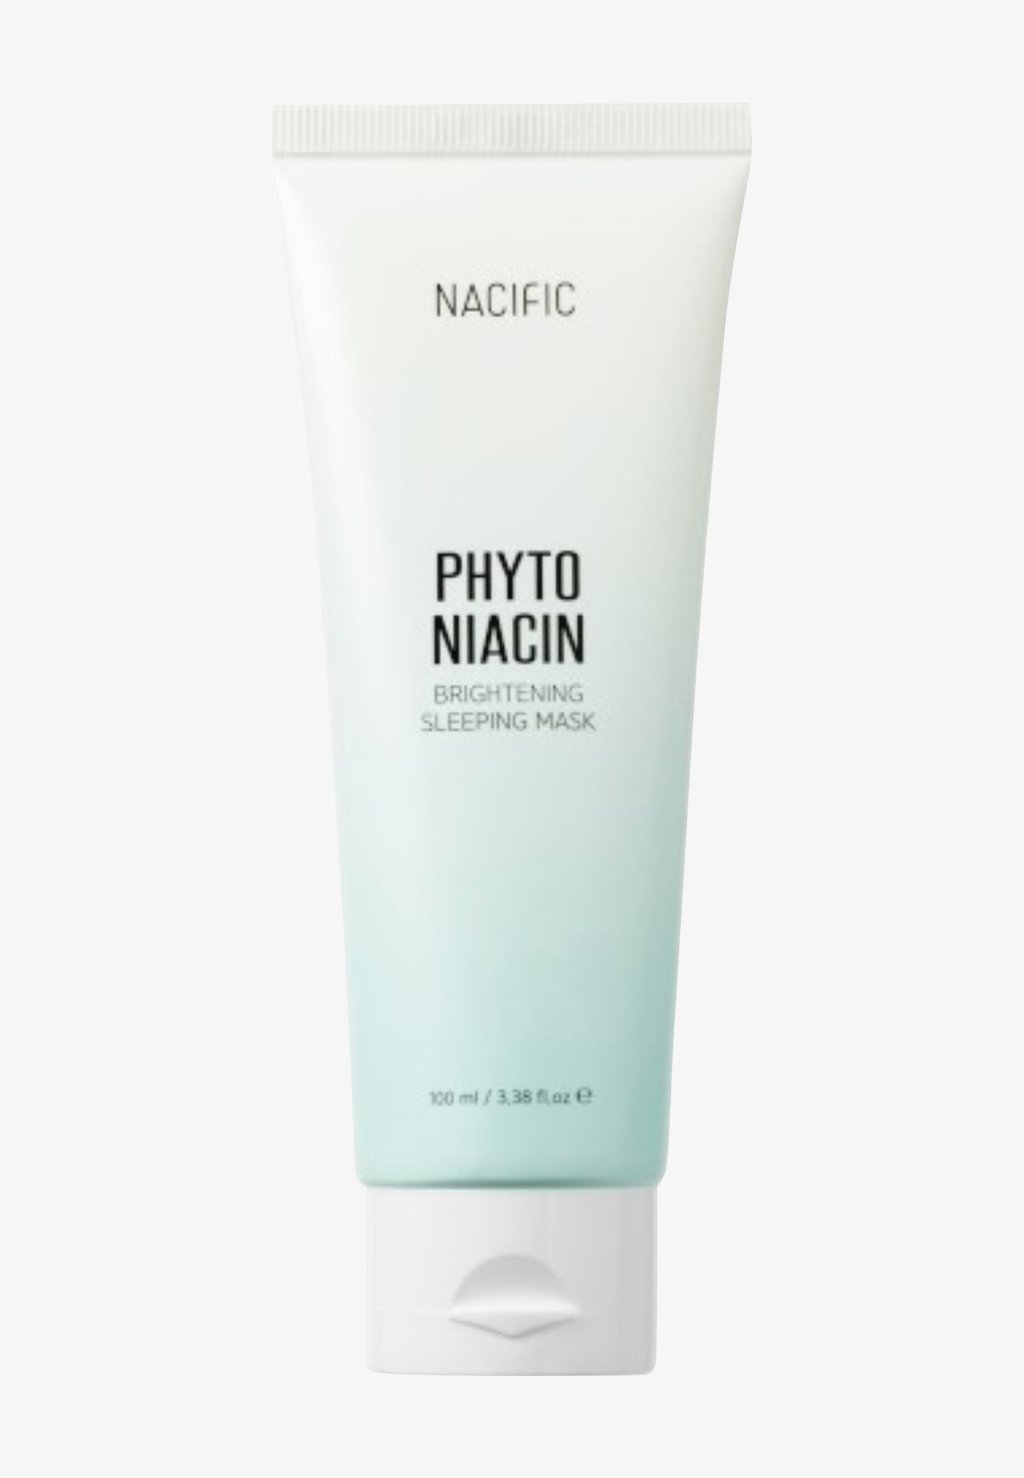 Дневной крем Phyto Niacin Brightening Sleeping Mask NACIFIC крем для тела nacific крем для тела выравнивающий тон с ниацинамидом phyto niacin brightening body tone up cream